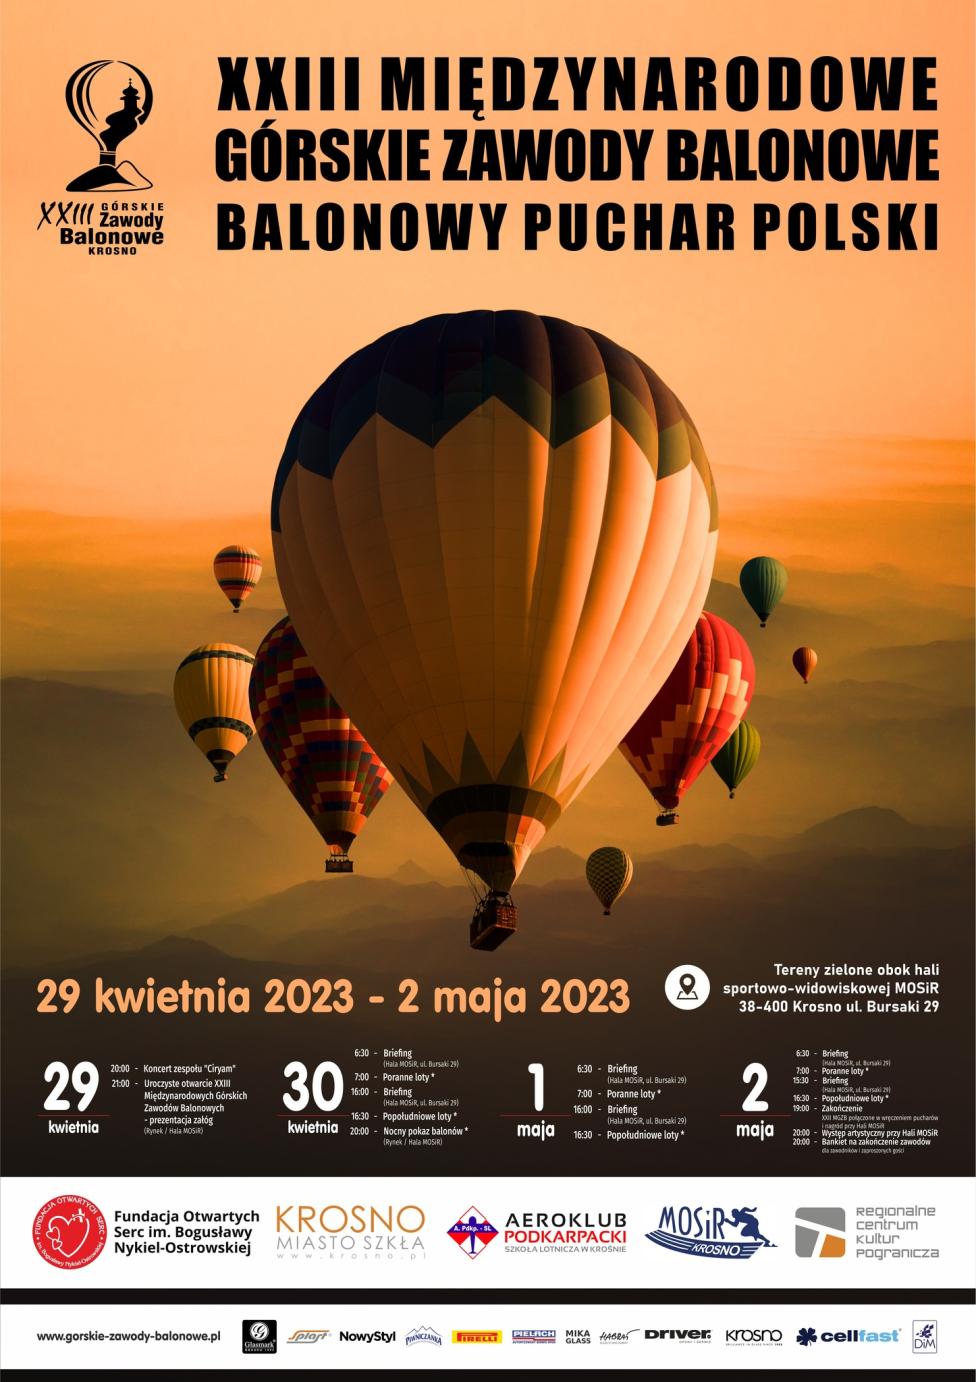 XXIII Międzynarodowe Górskie Zawody Balonowe w Krośnie - plakat (fot. Górskie Zawody Balonowe)